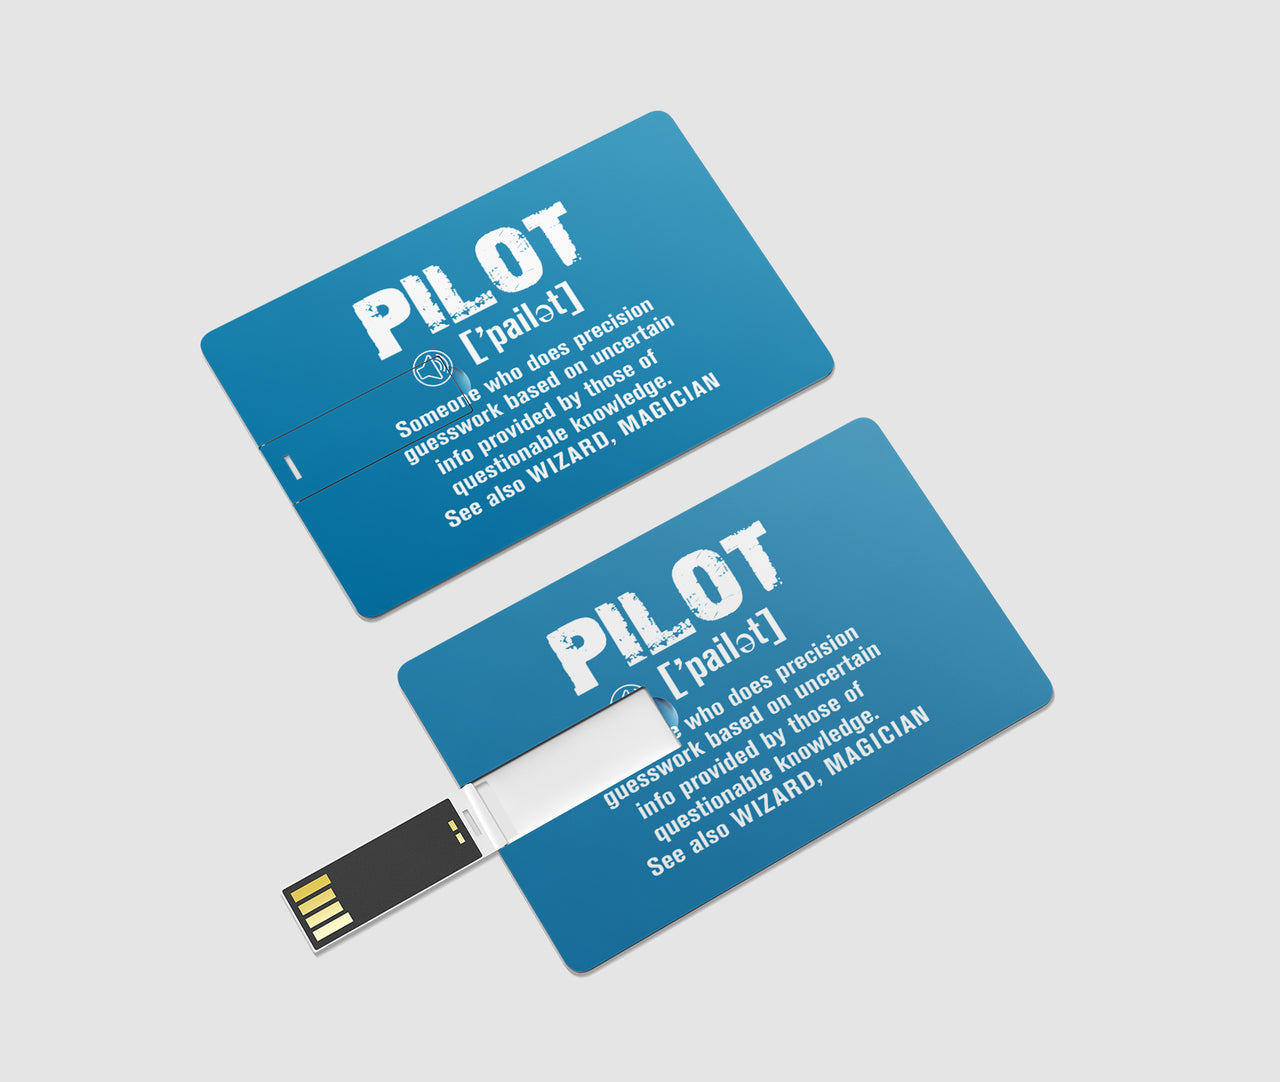 Pilot [Noun] Designed USB Cards